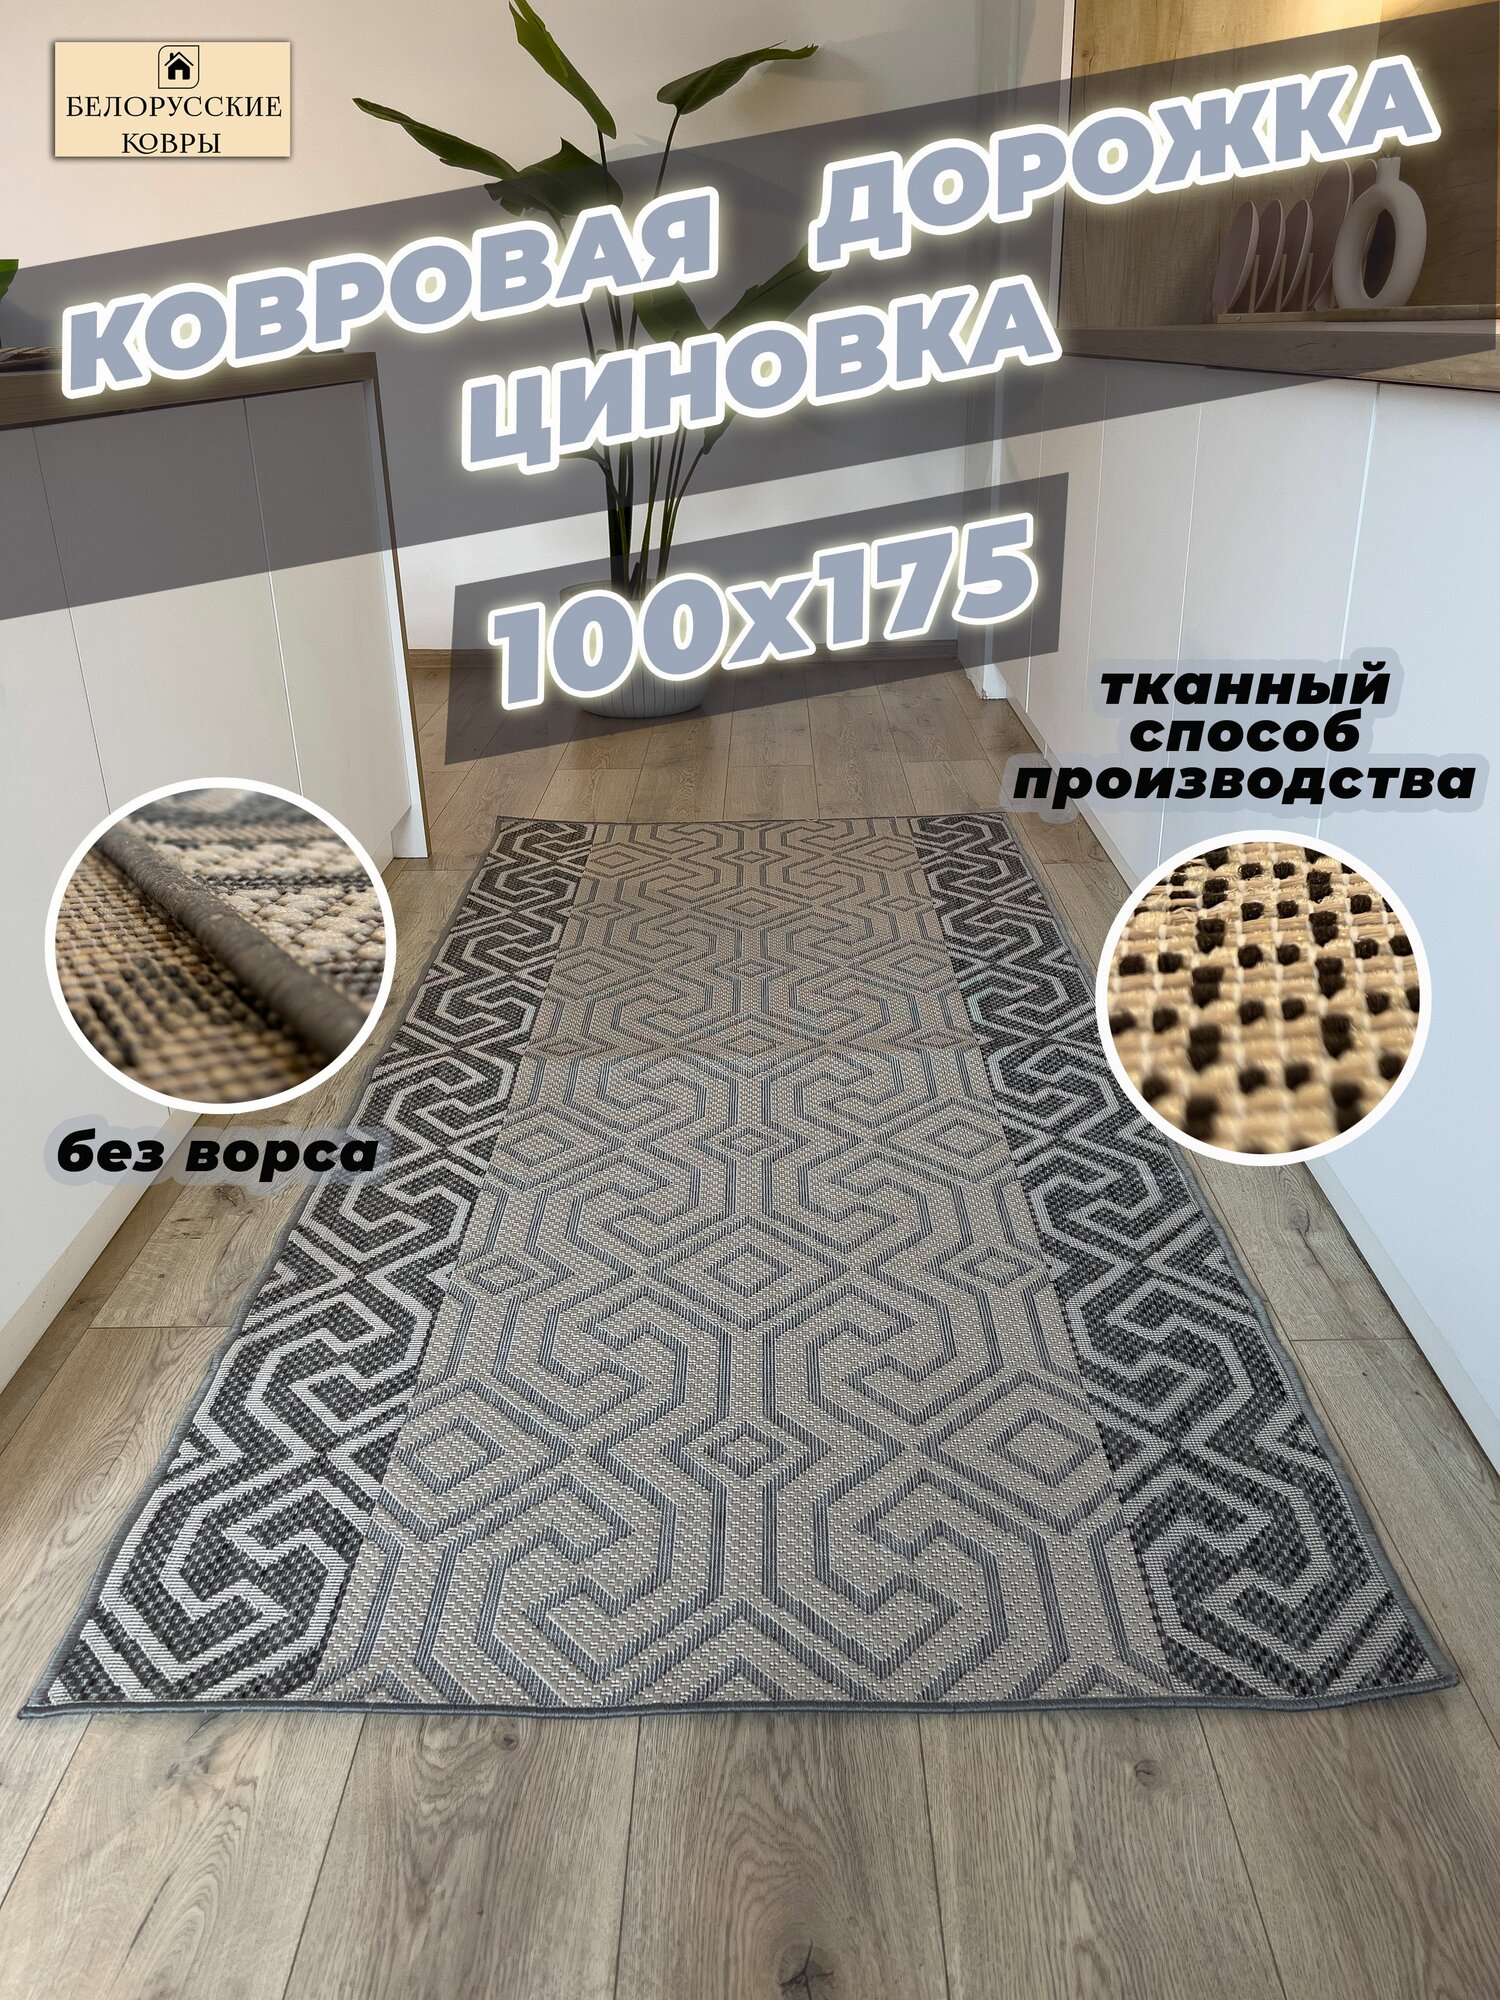 Белорусские ковры, ковровая дорожка циновка 100х175см./1,0х1,75м.